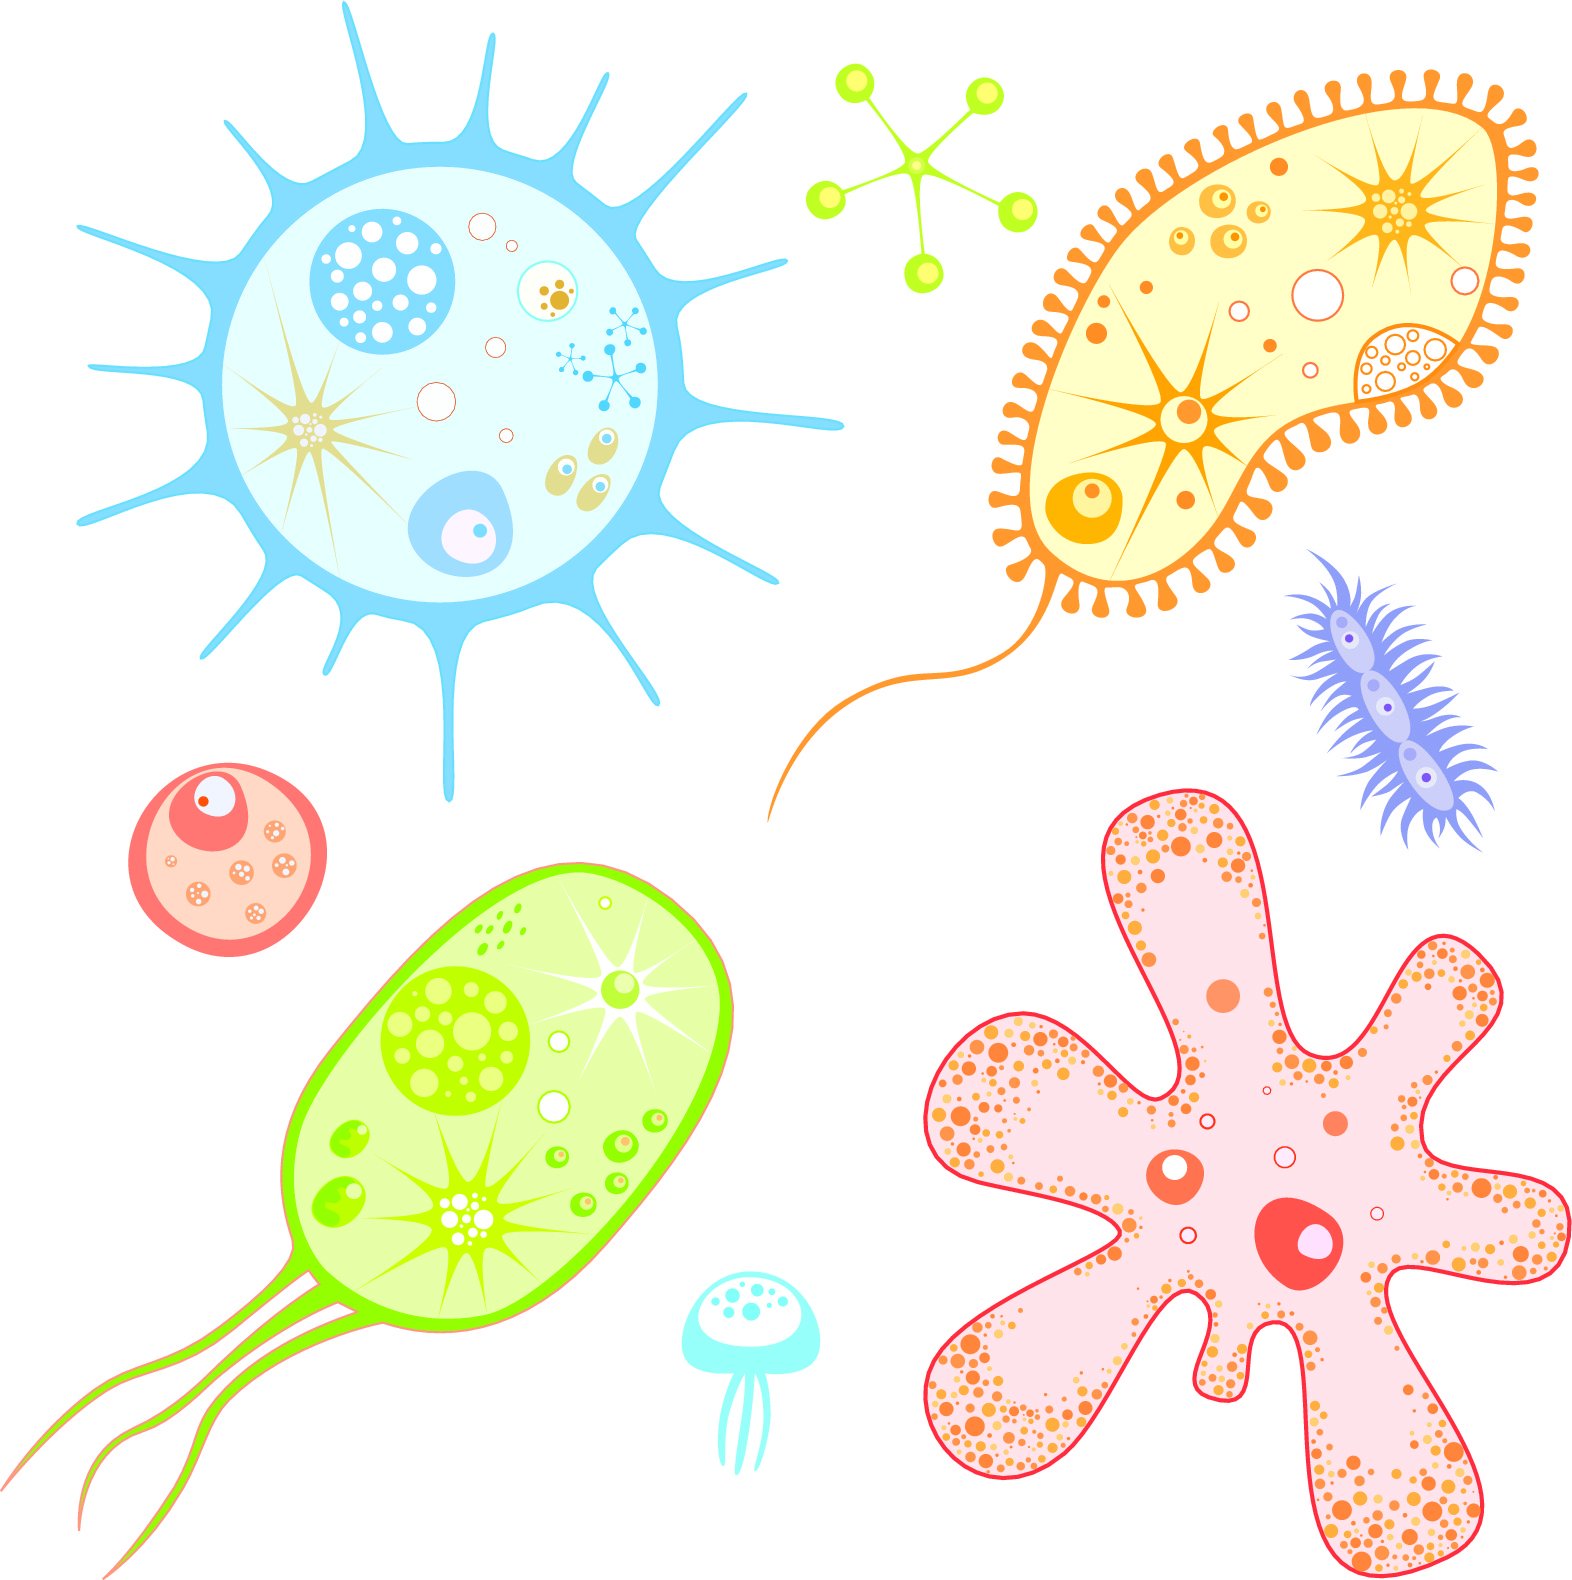 Рисунок вирусов и бактерий легко